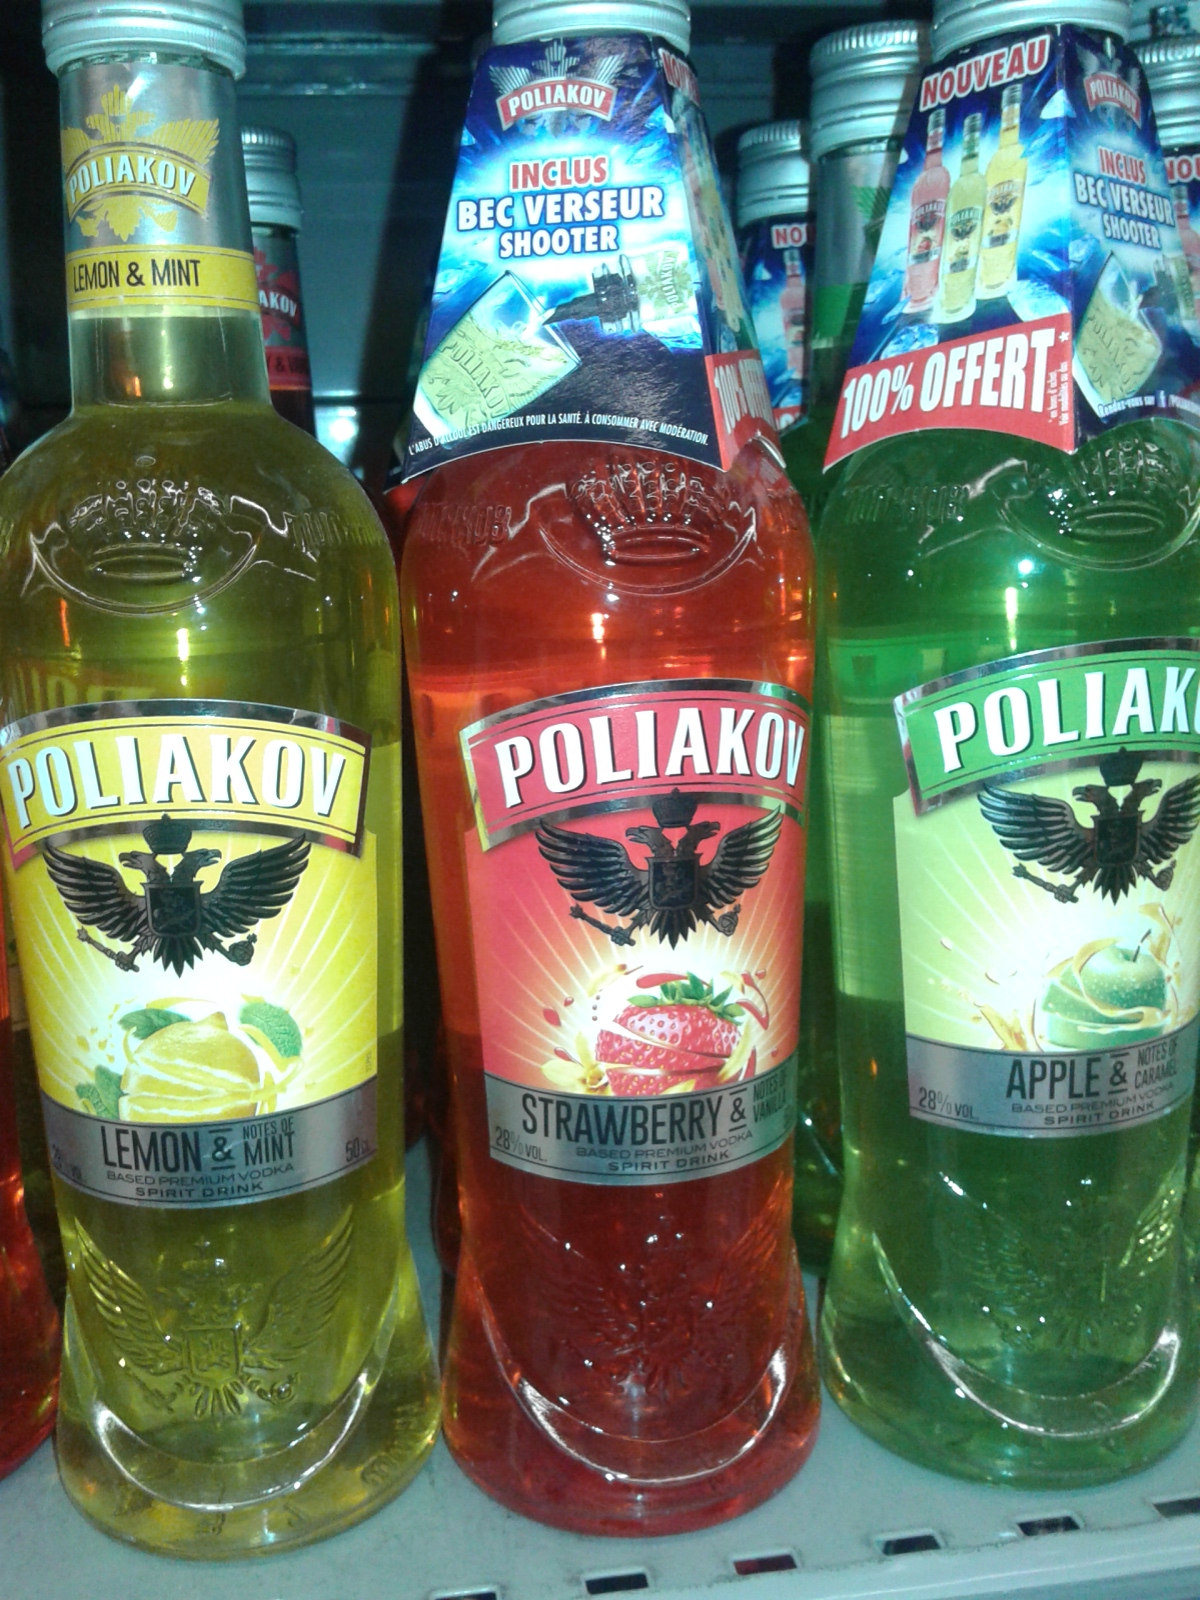 Cocktail Vodka Poliakov 100% Remboursé en 2 Bons (30/06)